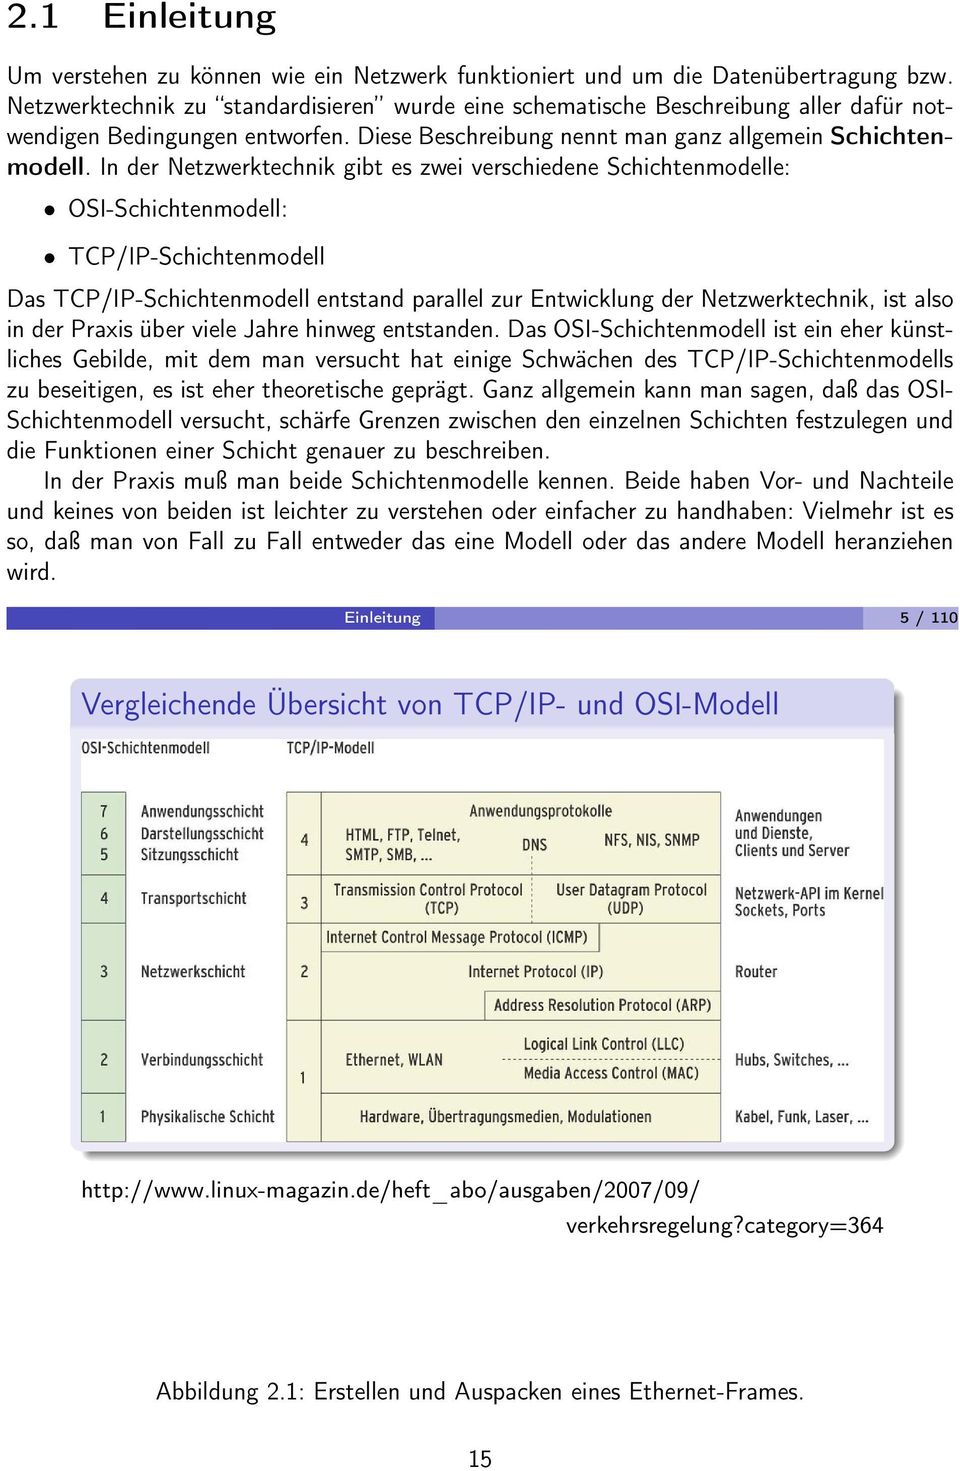 In der Netzwerktechnik gibt es zwei verschiedene Schichtenmodelle: OSI-Schichtenmodell: TCP/IP-Schichtenmodell Das TCP/IP-Schichtenmodell entstand parallel zur Entwicklung der Netzwerktechnik, ist